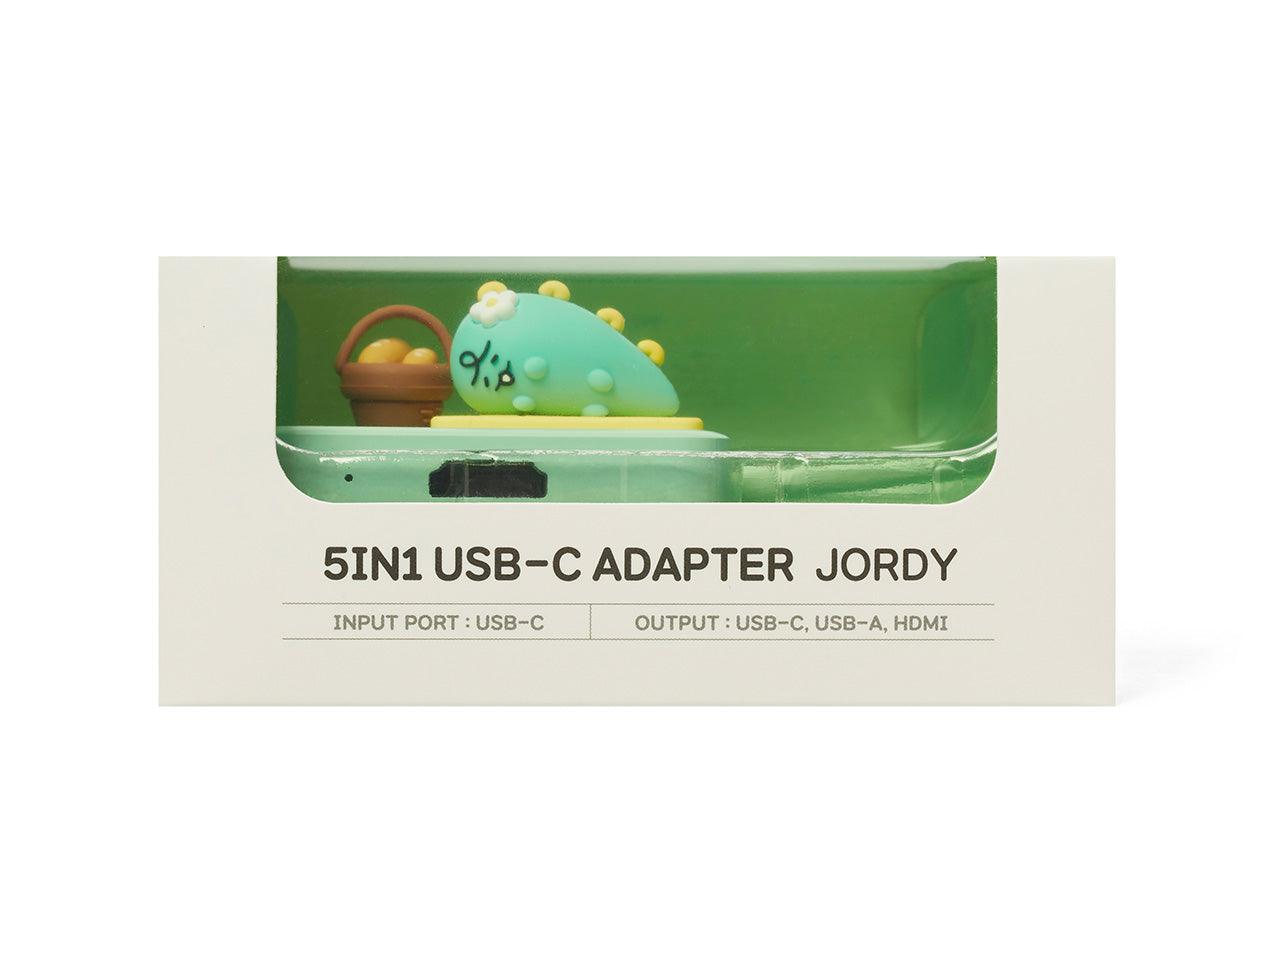 Kakao Friends Jordy 5 in 1 USB-C Adapter USB-C 多功能轉接器 - SOUL SIMPLE HK